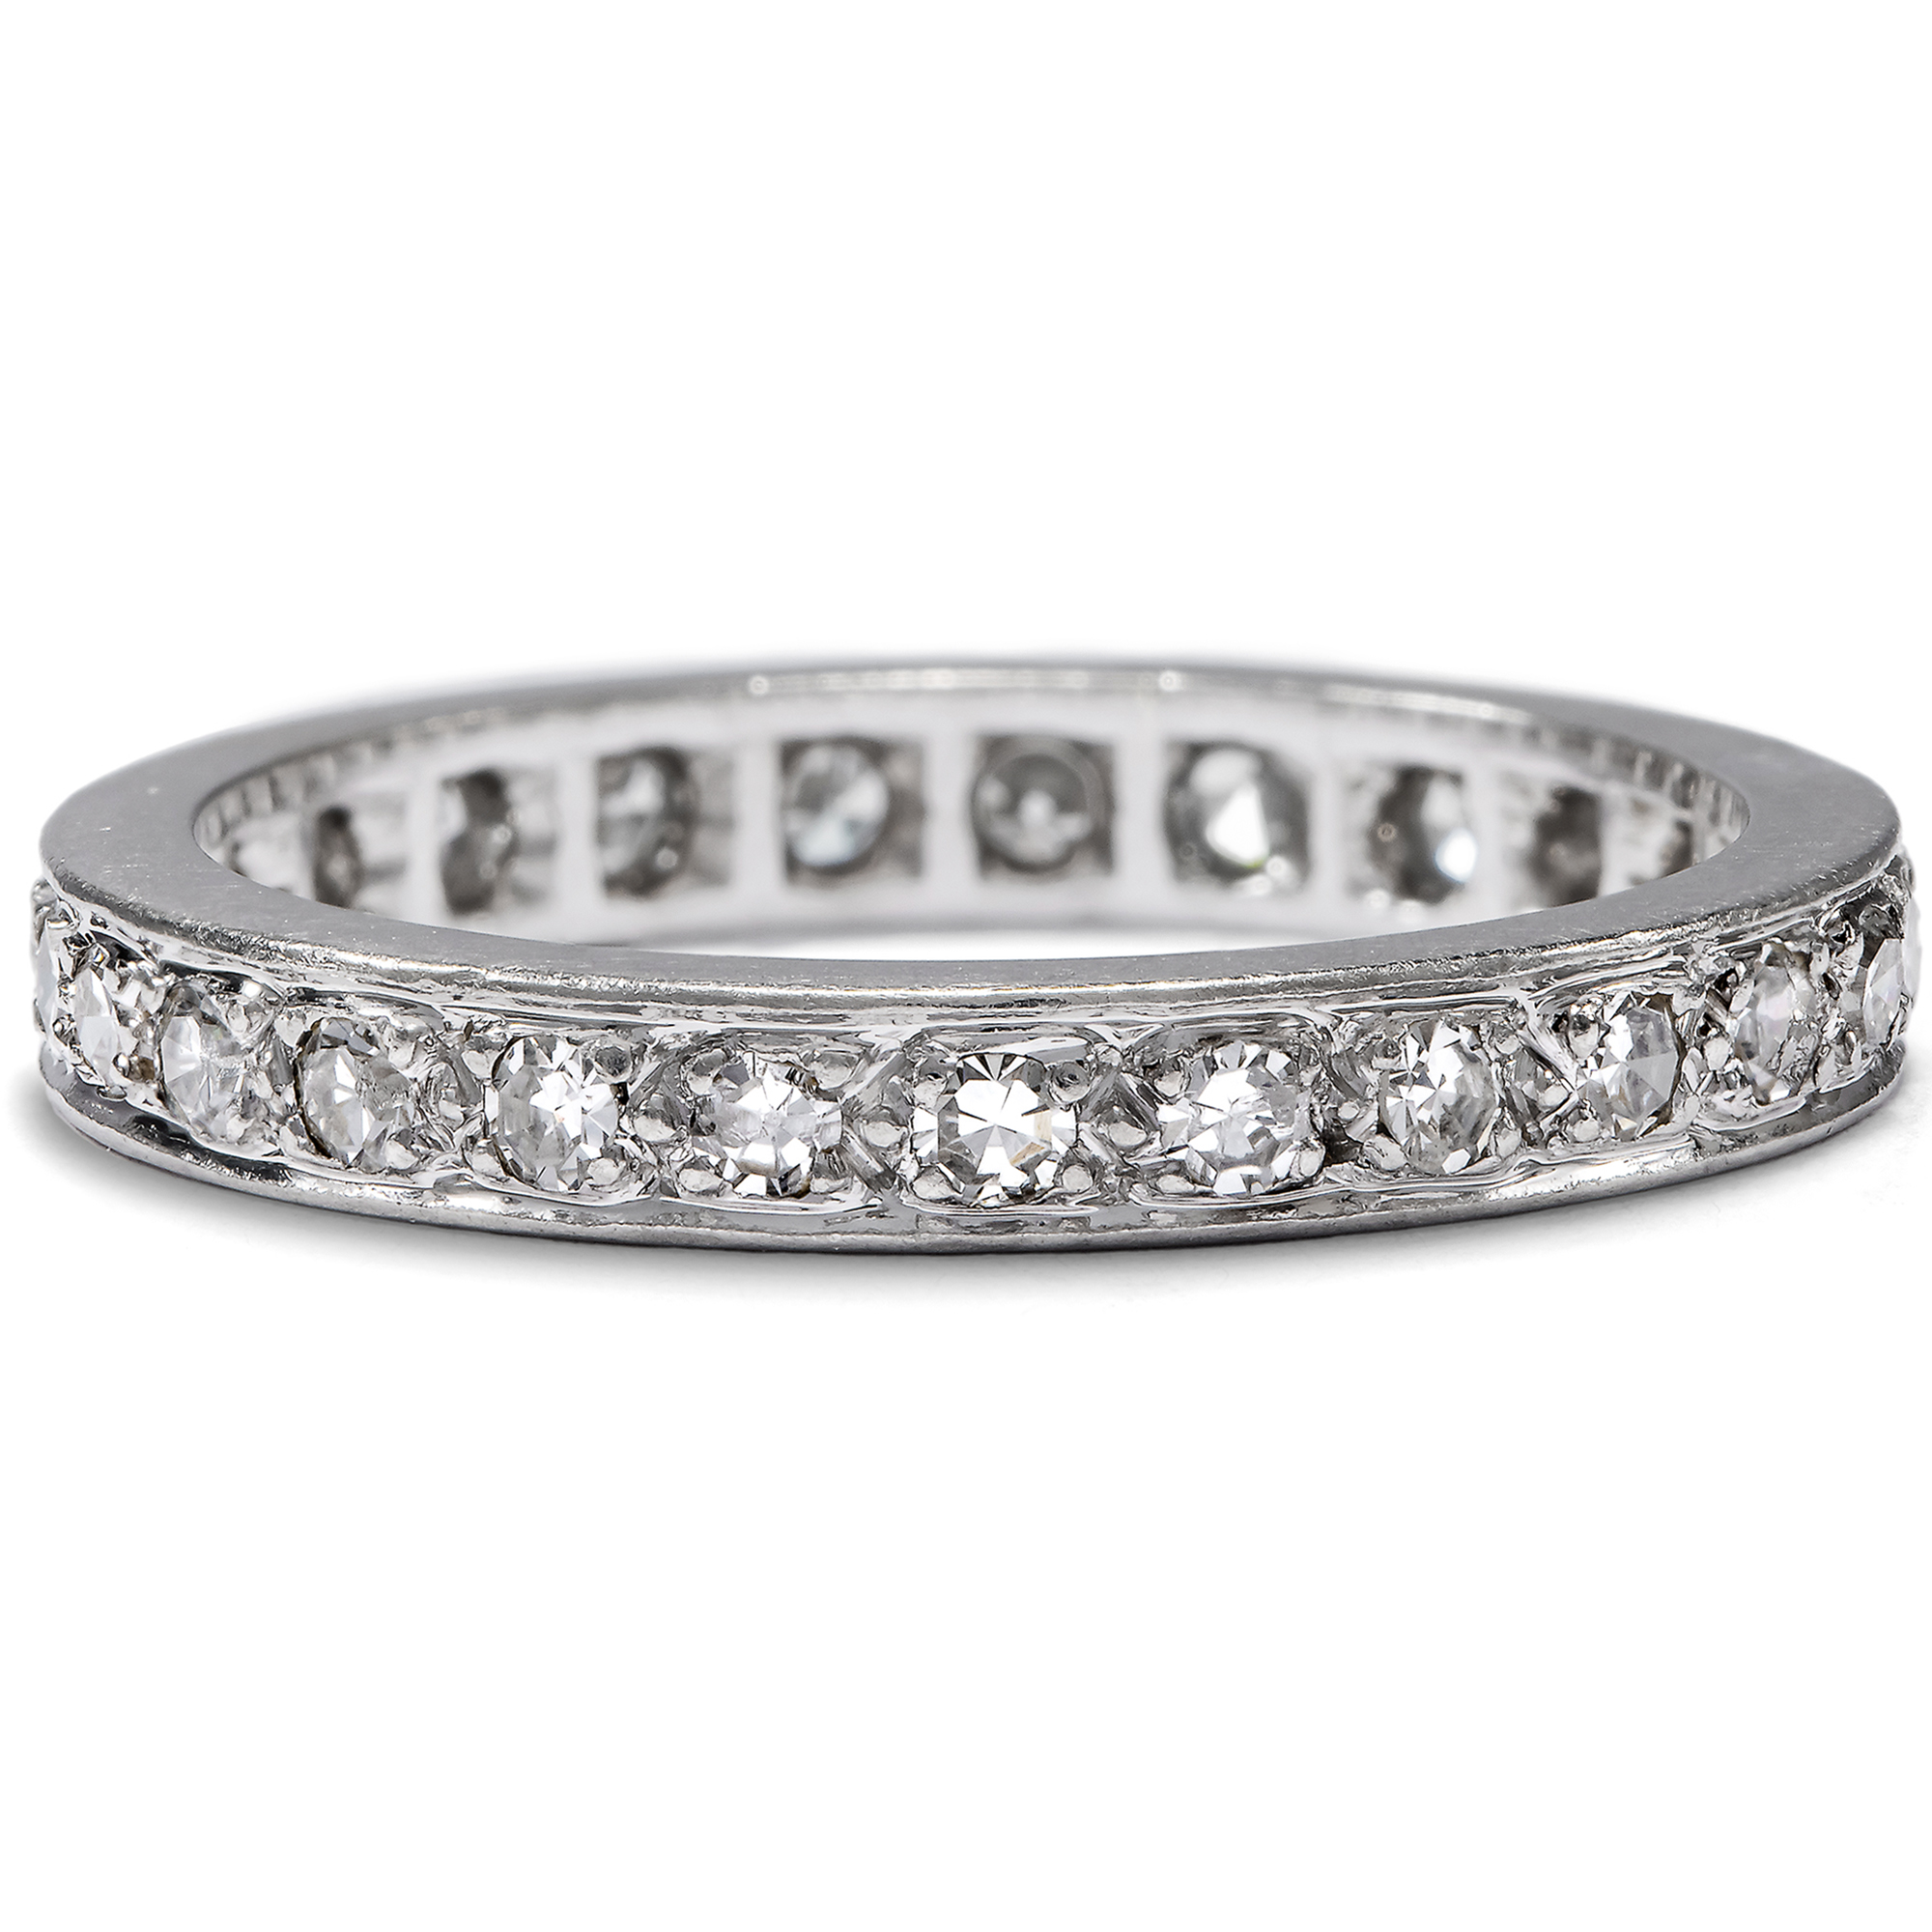 Vintage Memory Ring with 0.62 ct Diamonds in Platinum, RW 53, Paris c. 1960